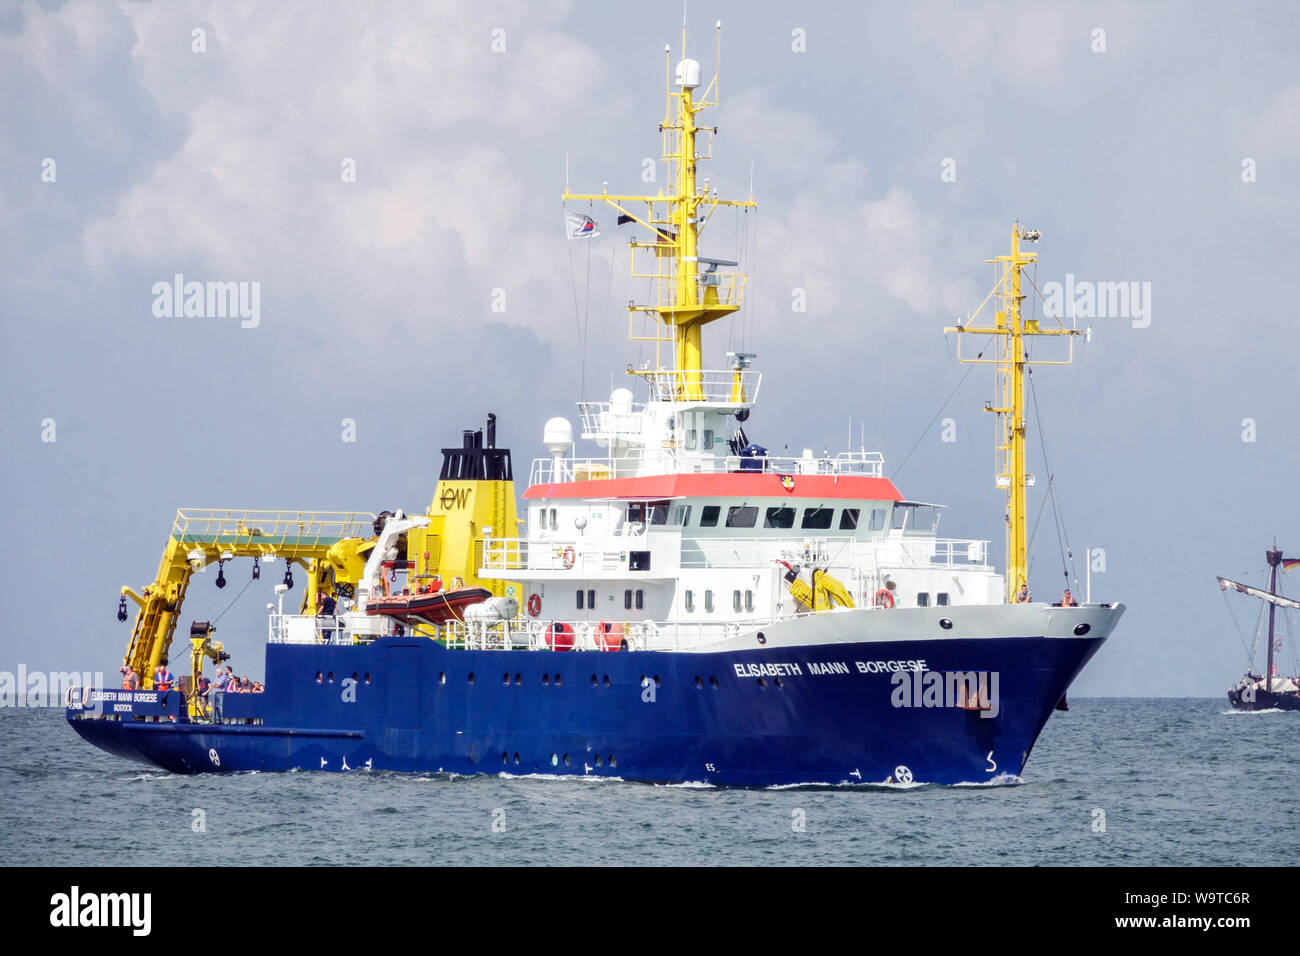 Elisabeth Mann Borgese navire, navire de recherche multi-usage en mer Baltique Banque D'Images